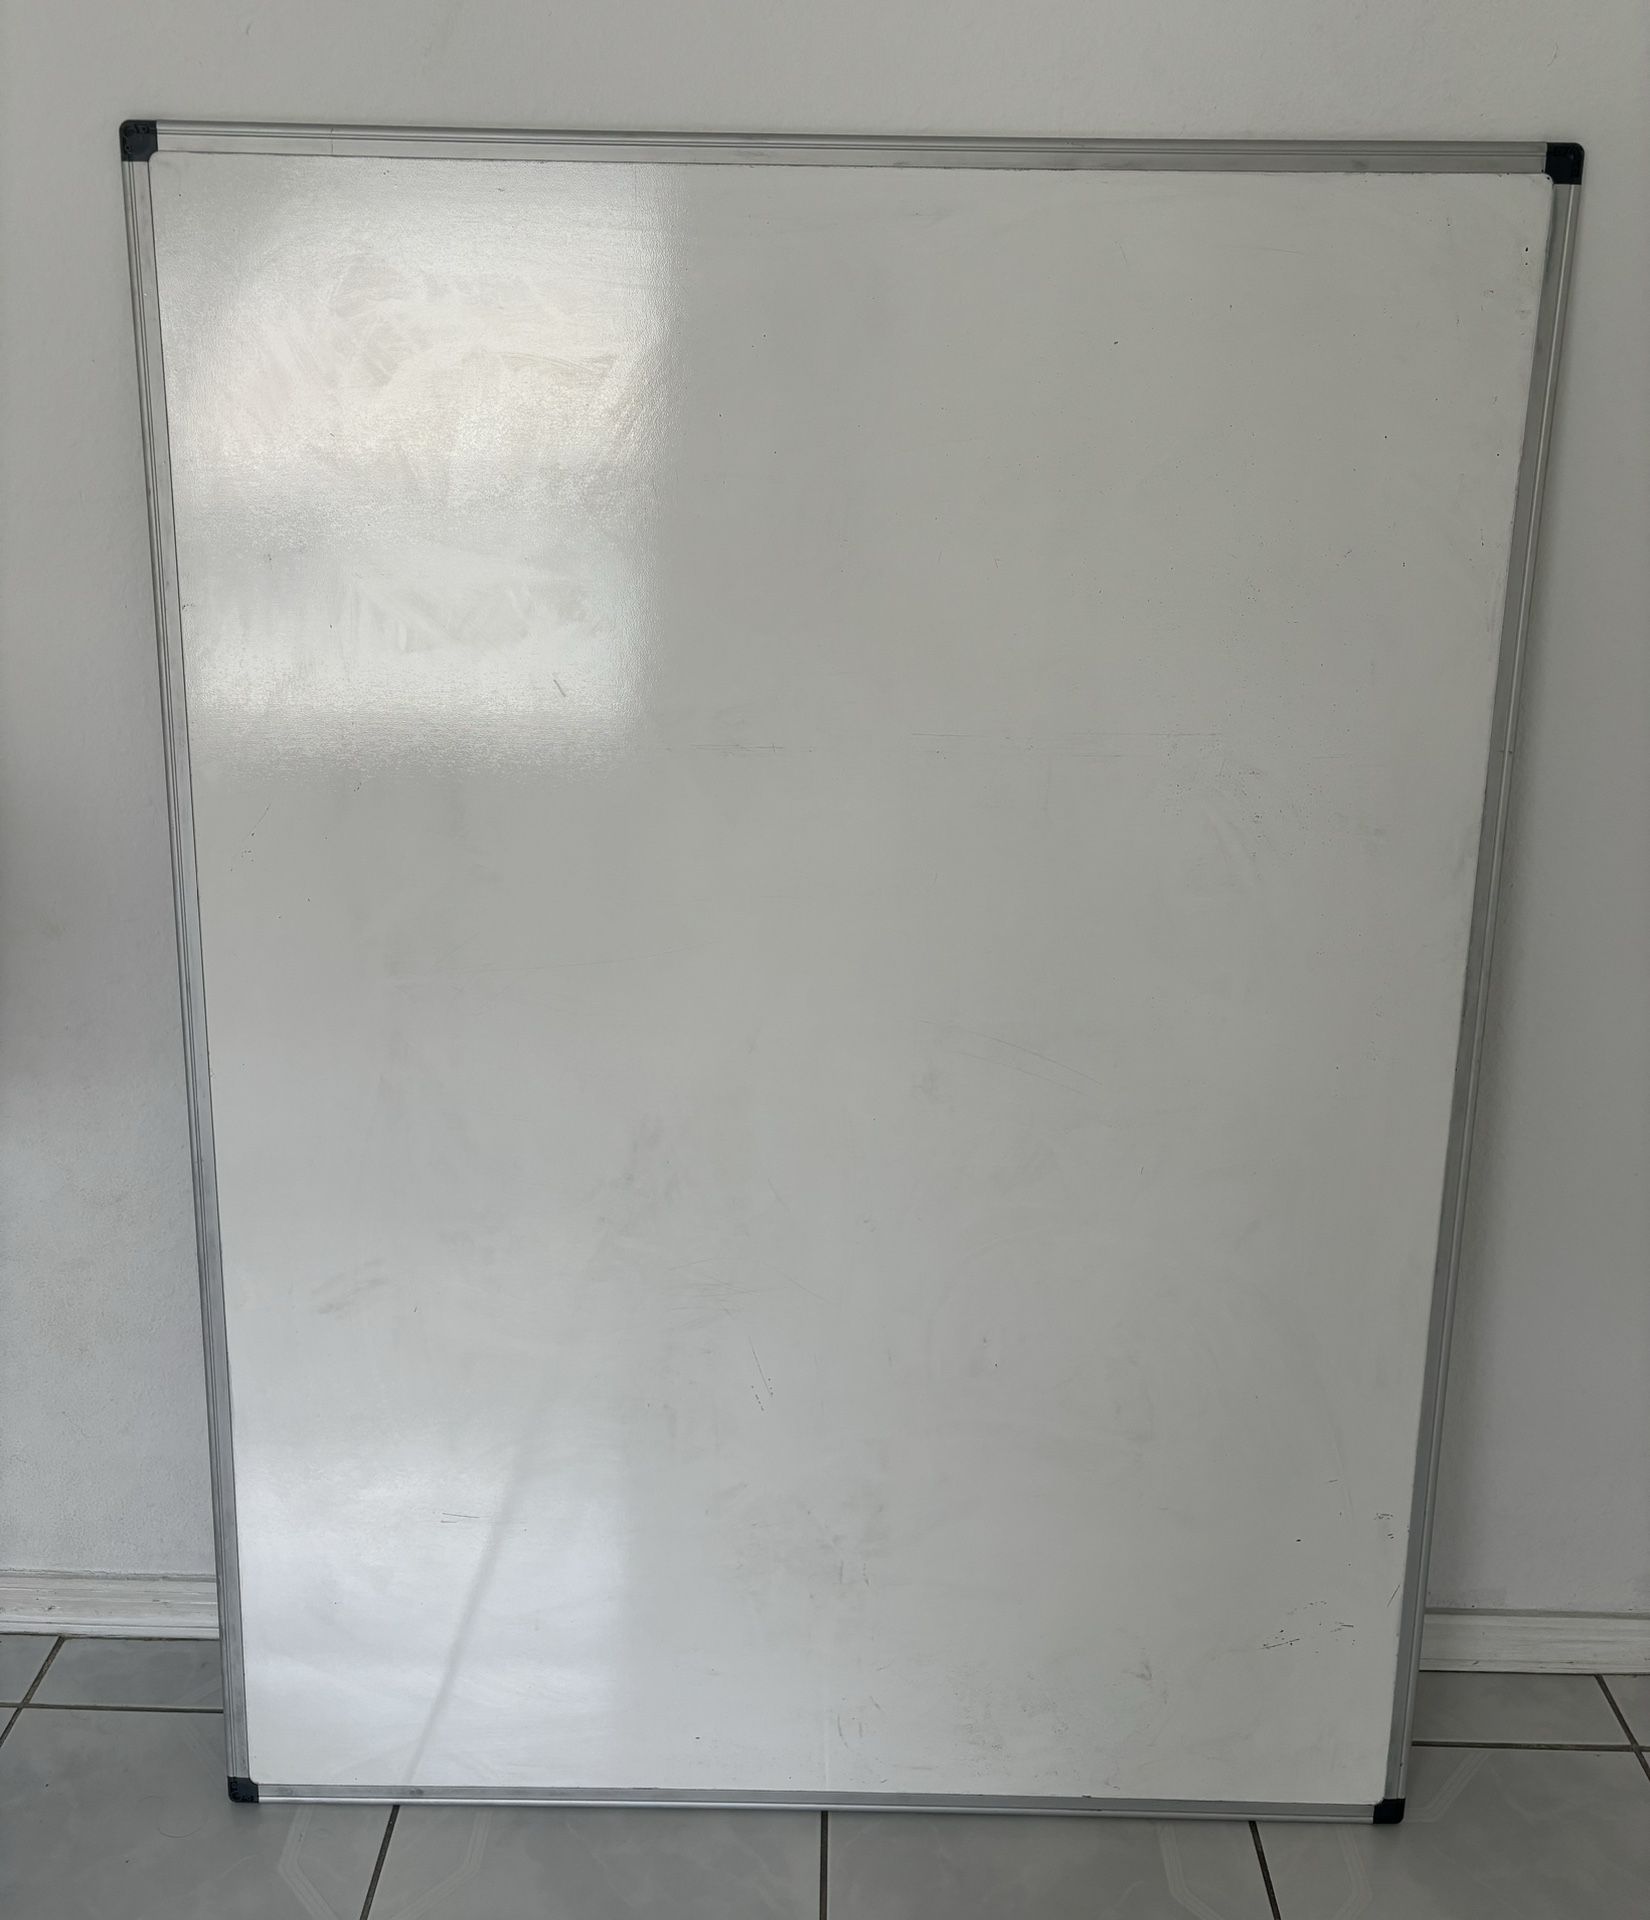 Large Whiteboard 